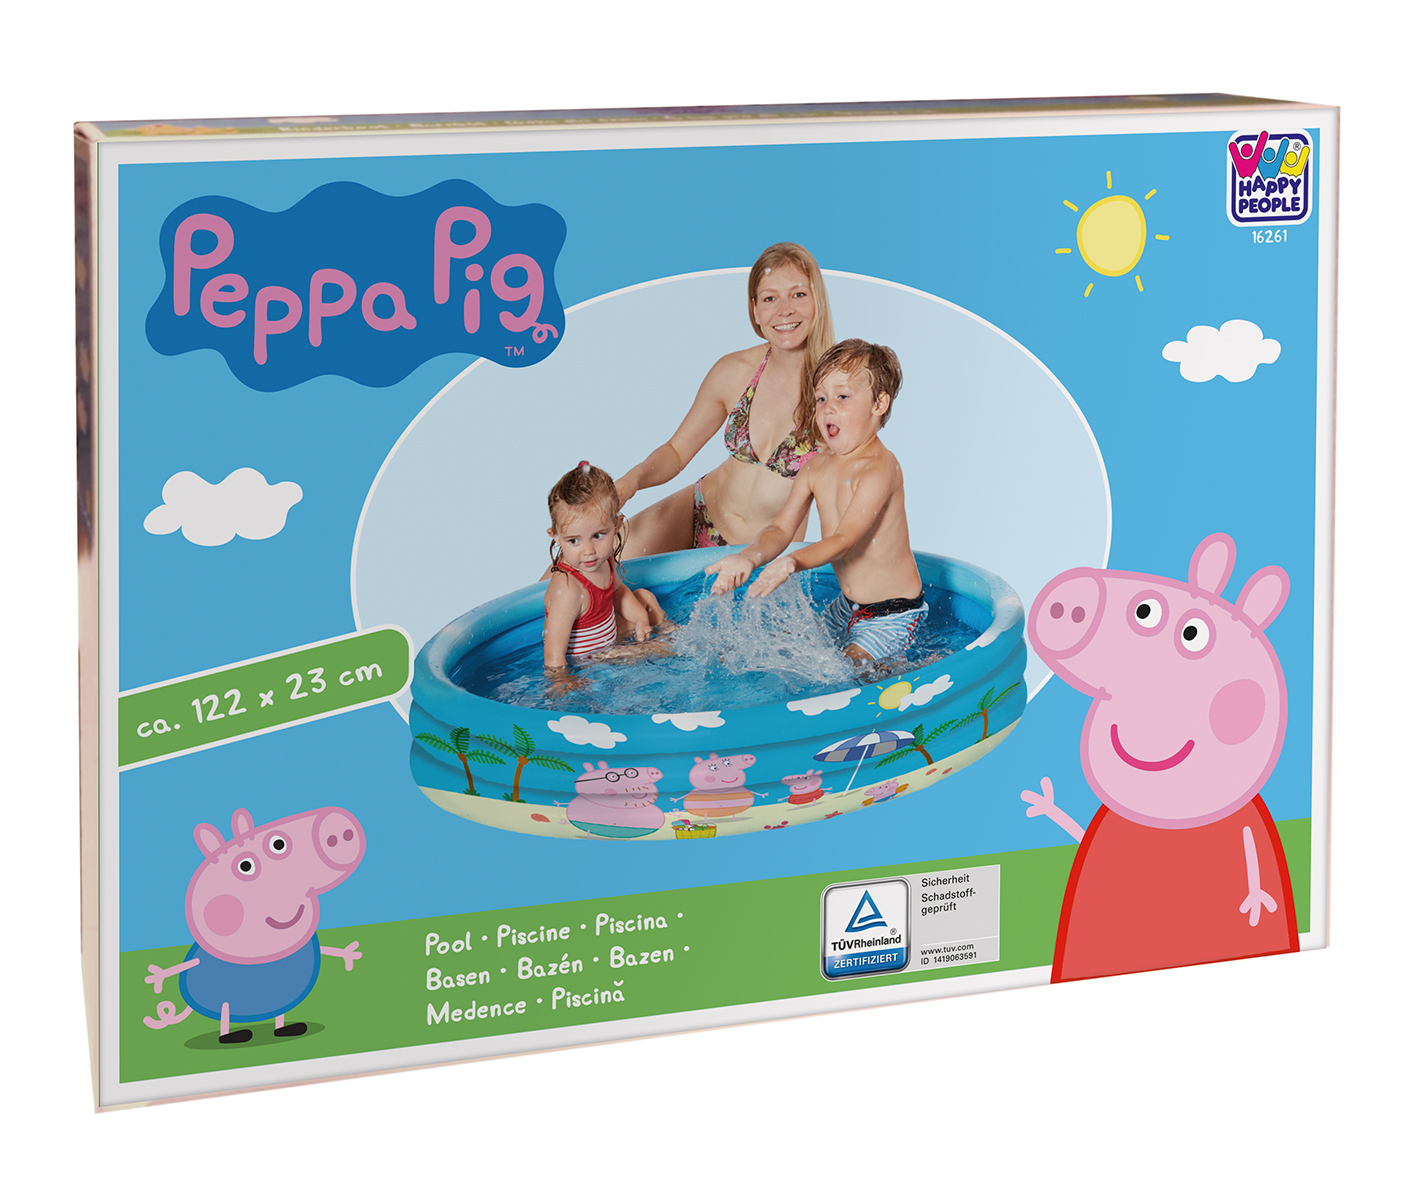 Happy People Peppa Pig 3-Ring-Pool, 122 x 23 cm